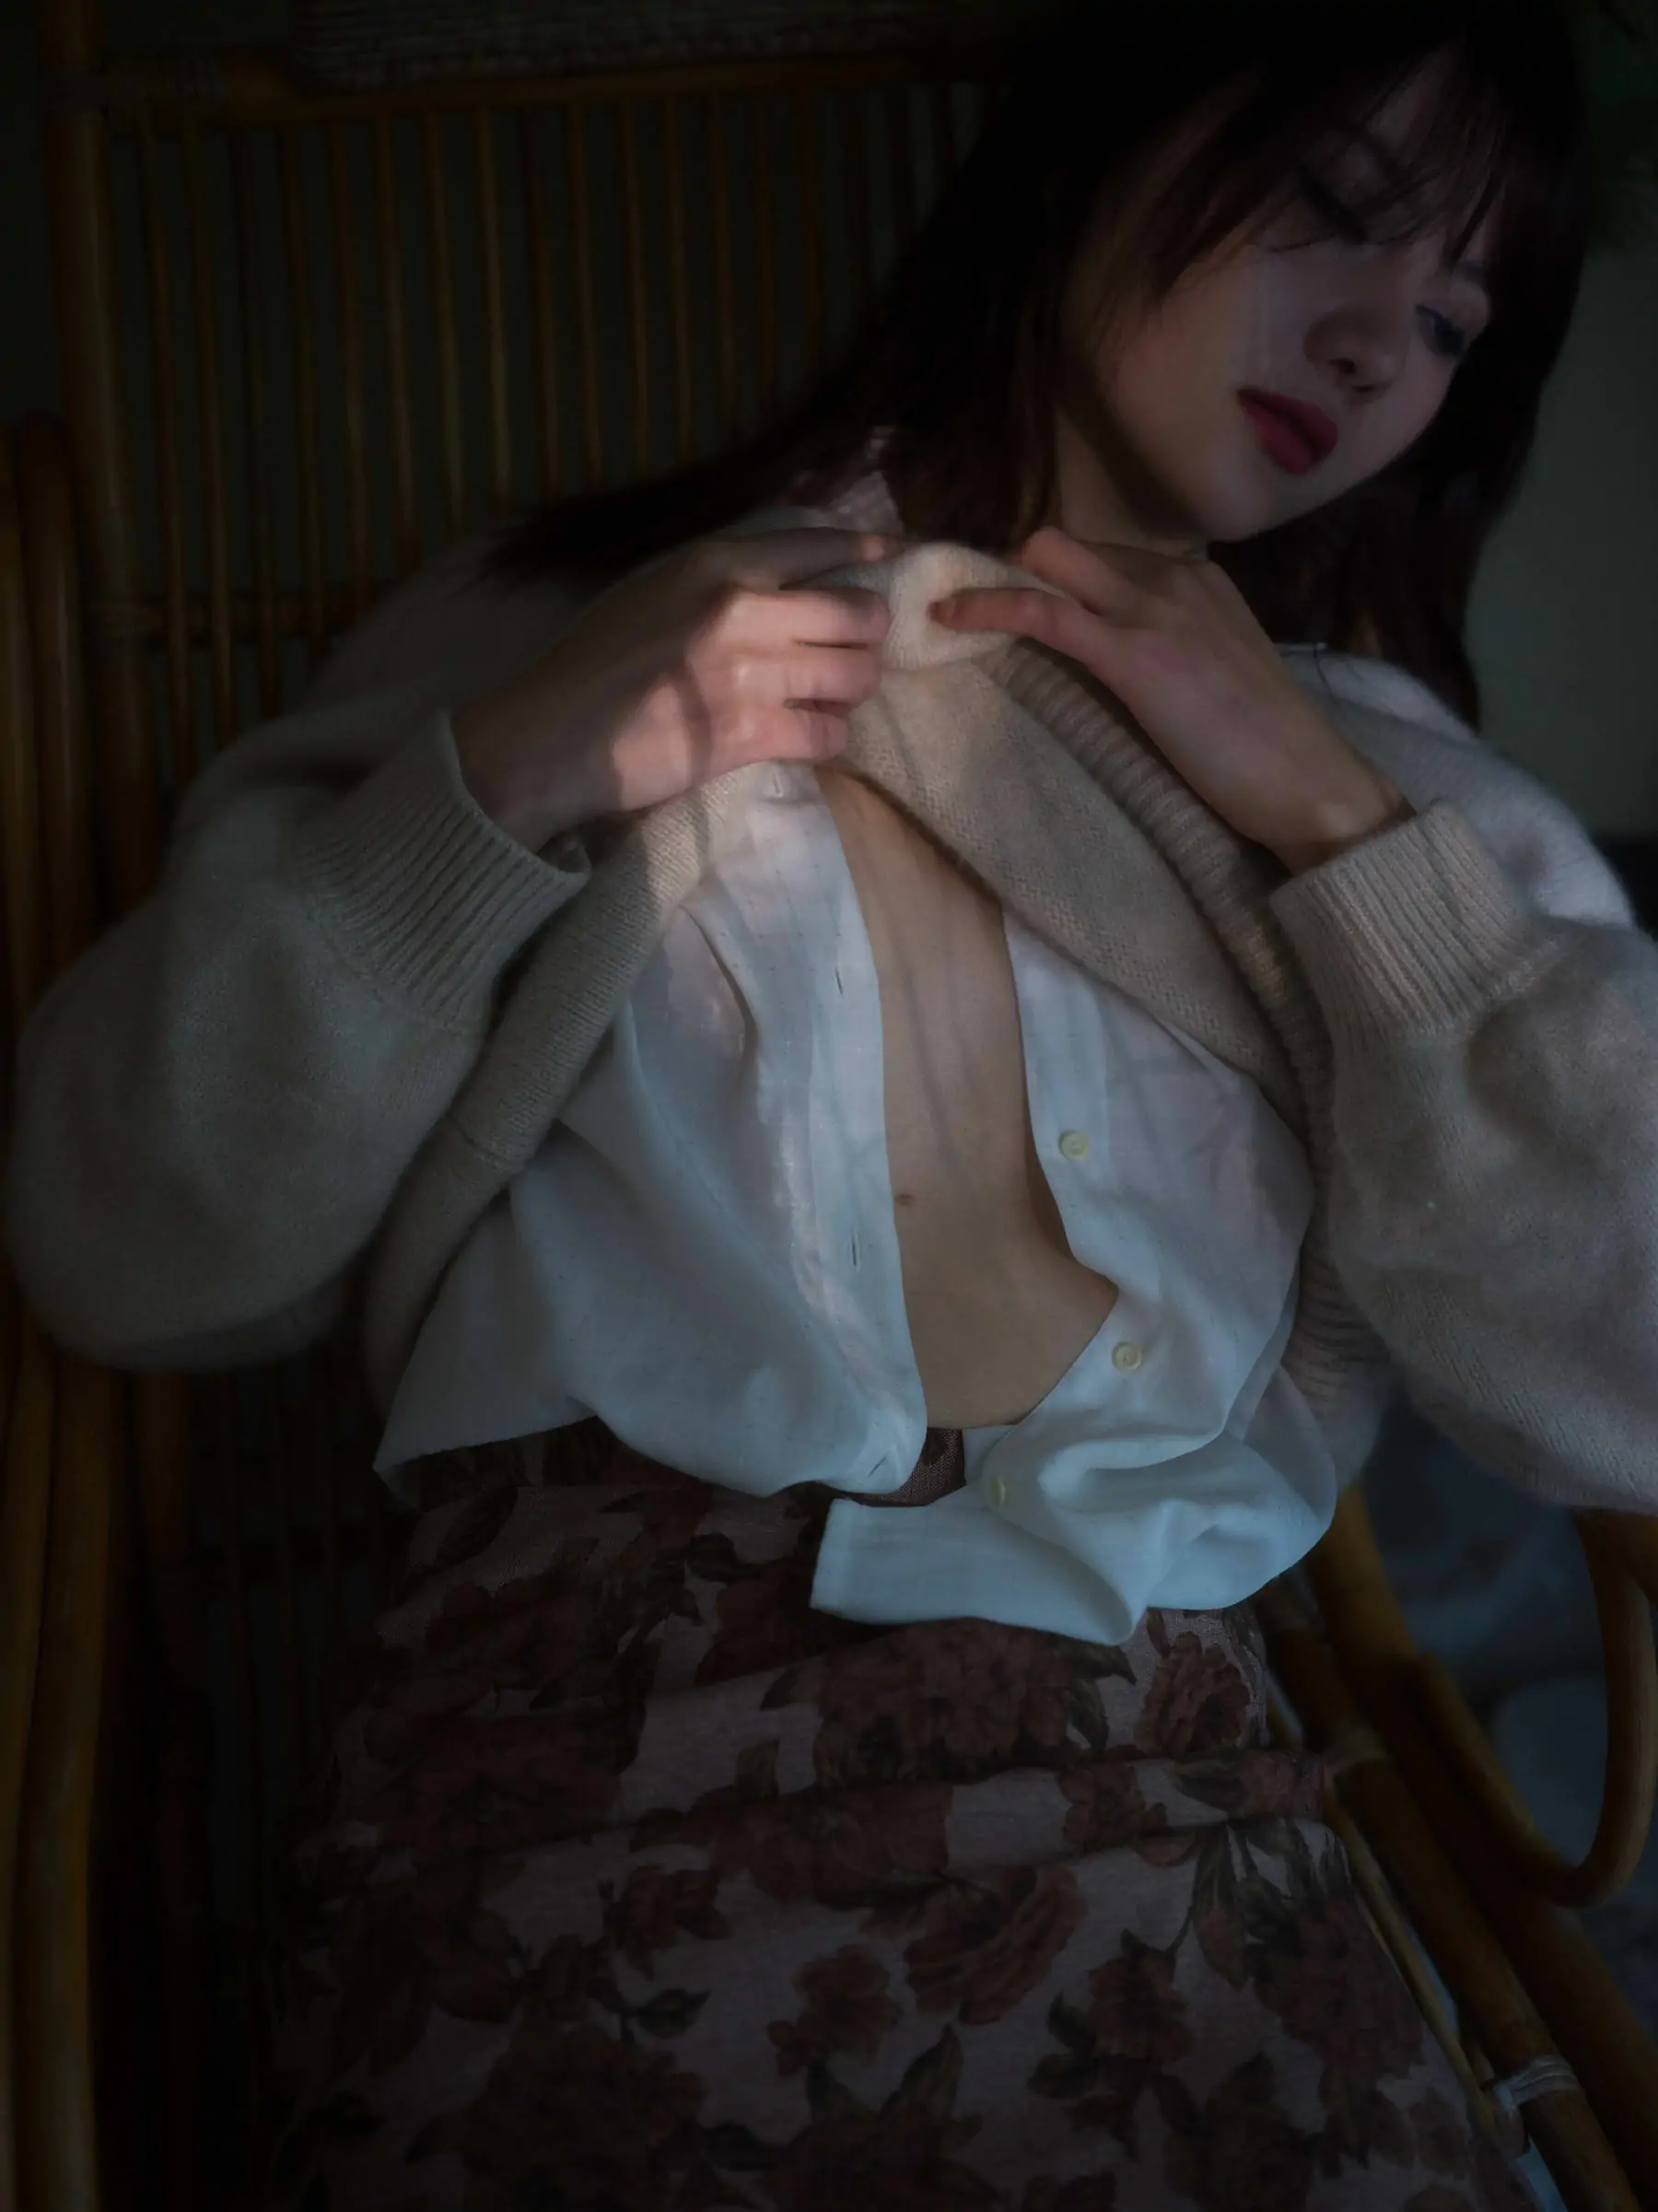 美女模特Azhua19970(阿朱啊) - 晚烟